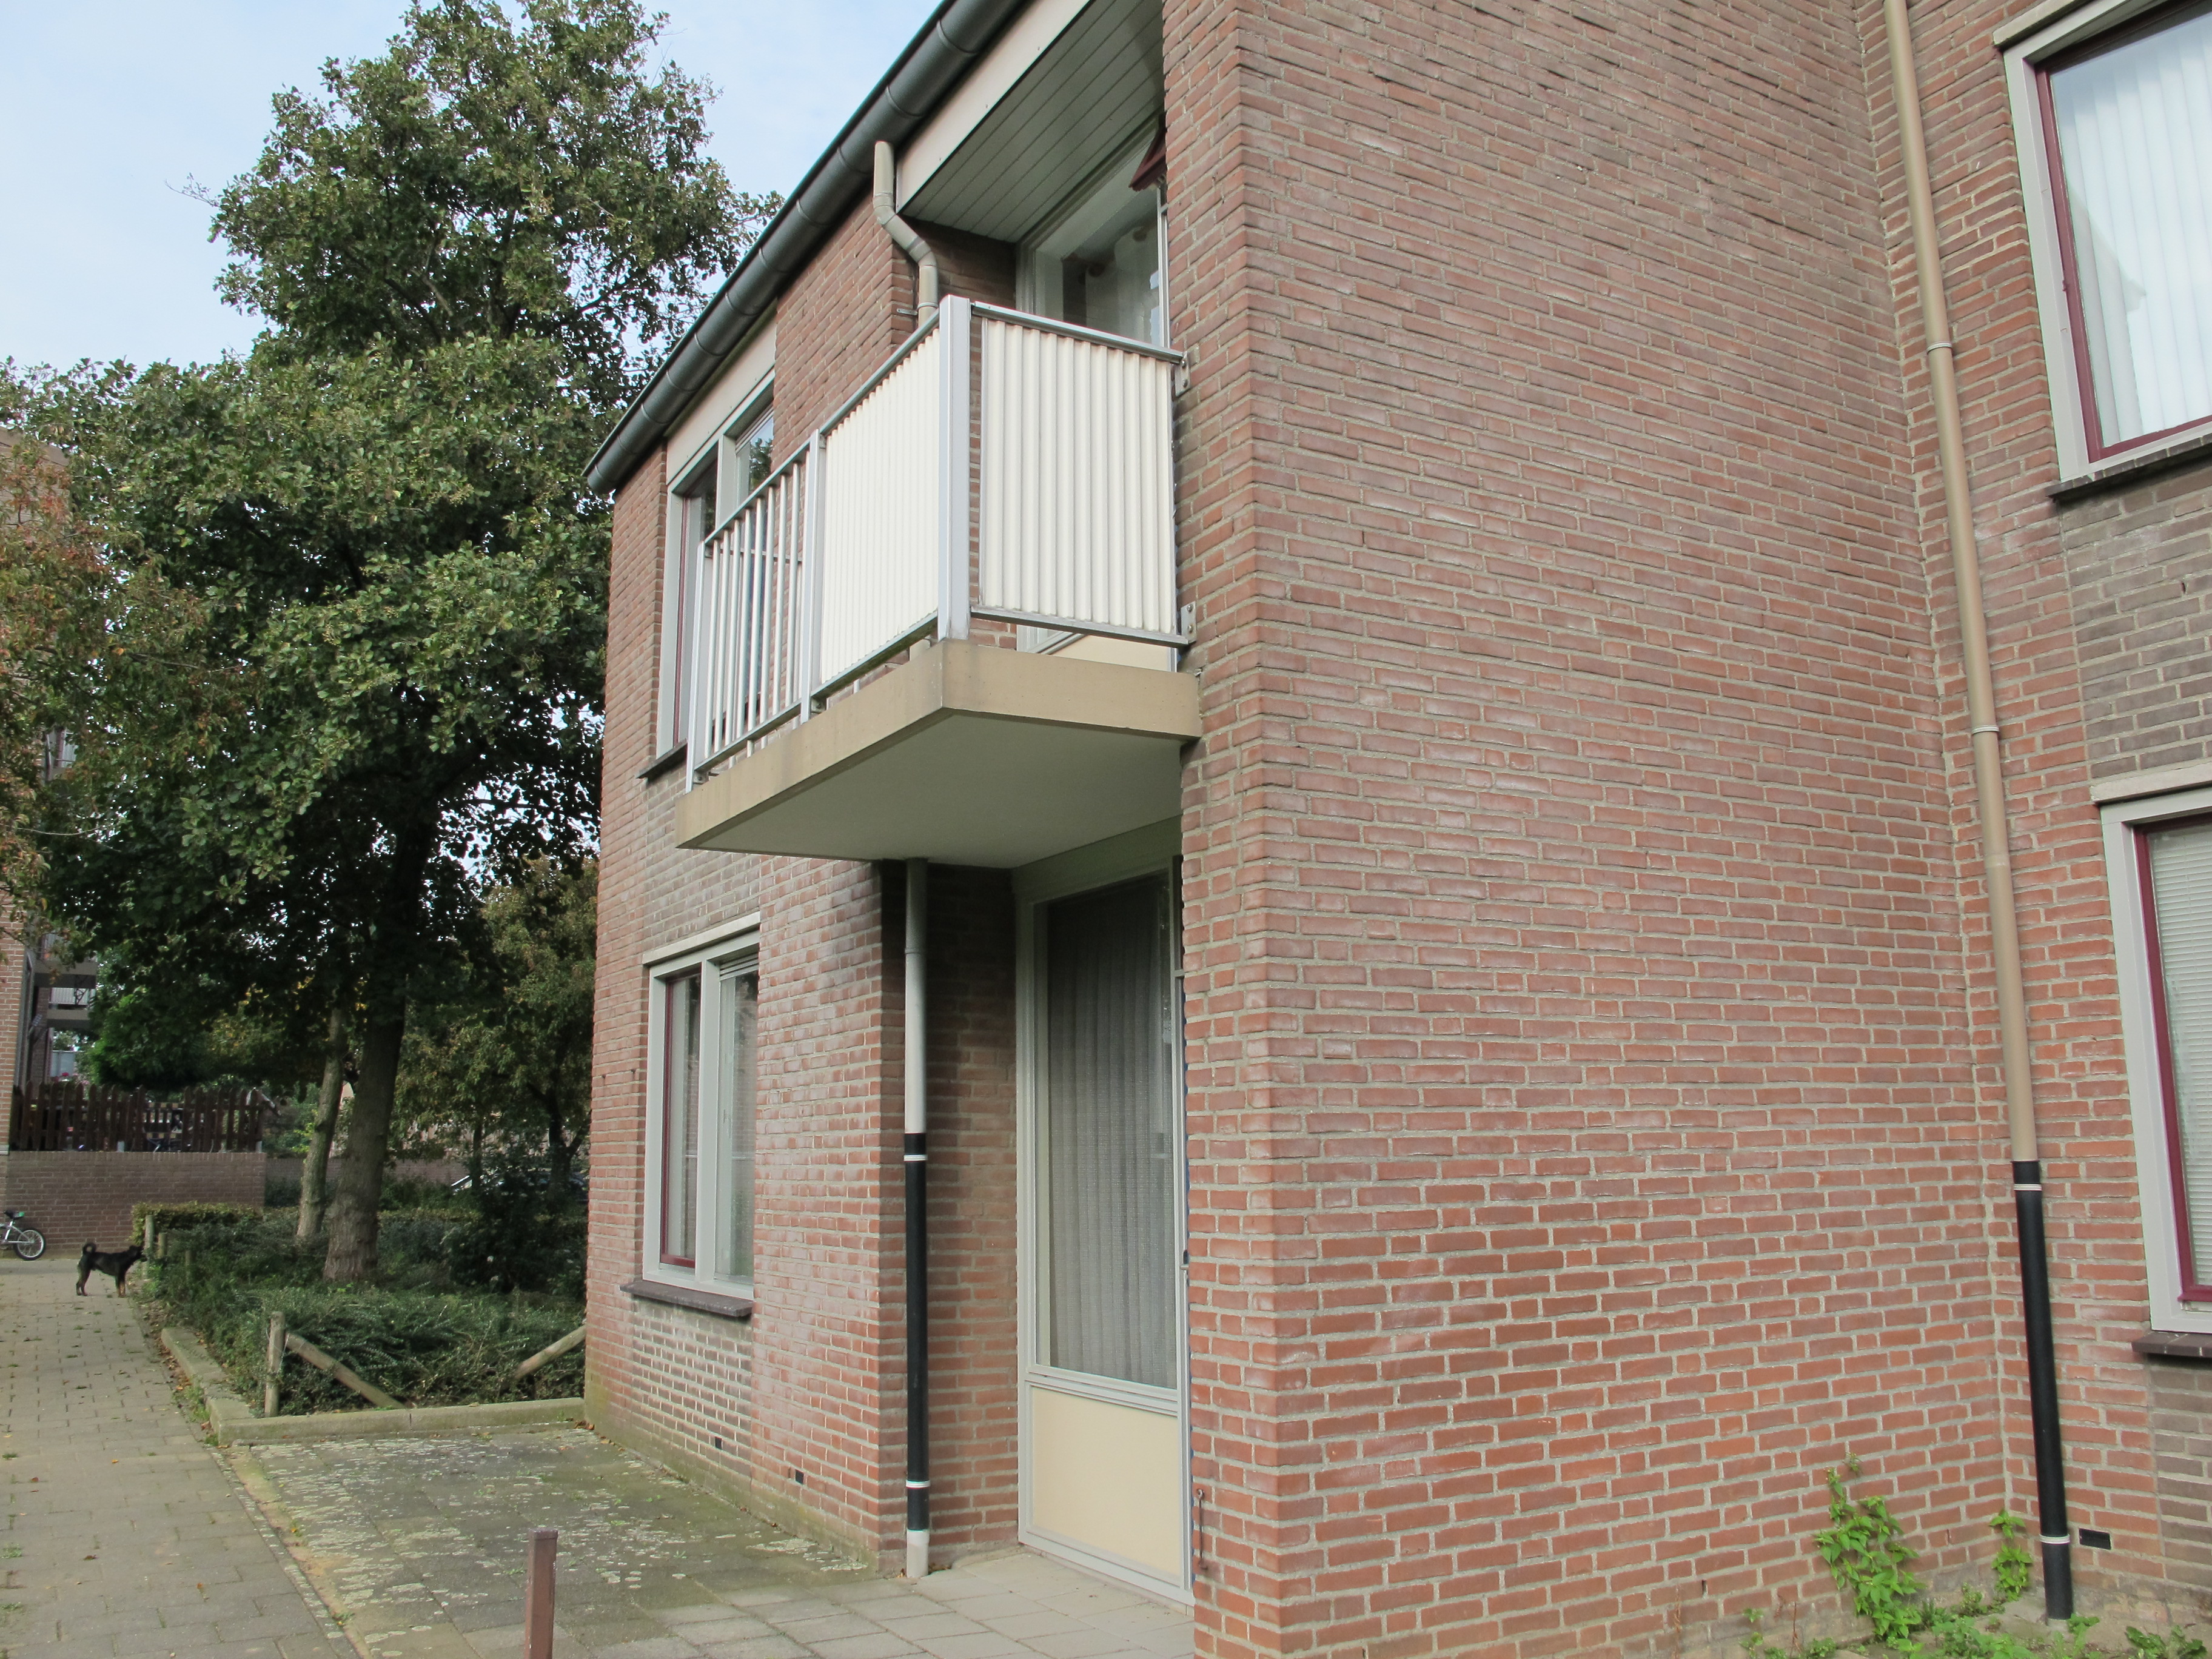 Amerstraat 39, 6163 KZ Geleen, Nederland